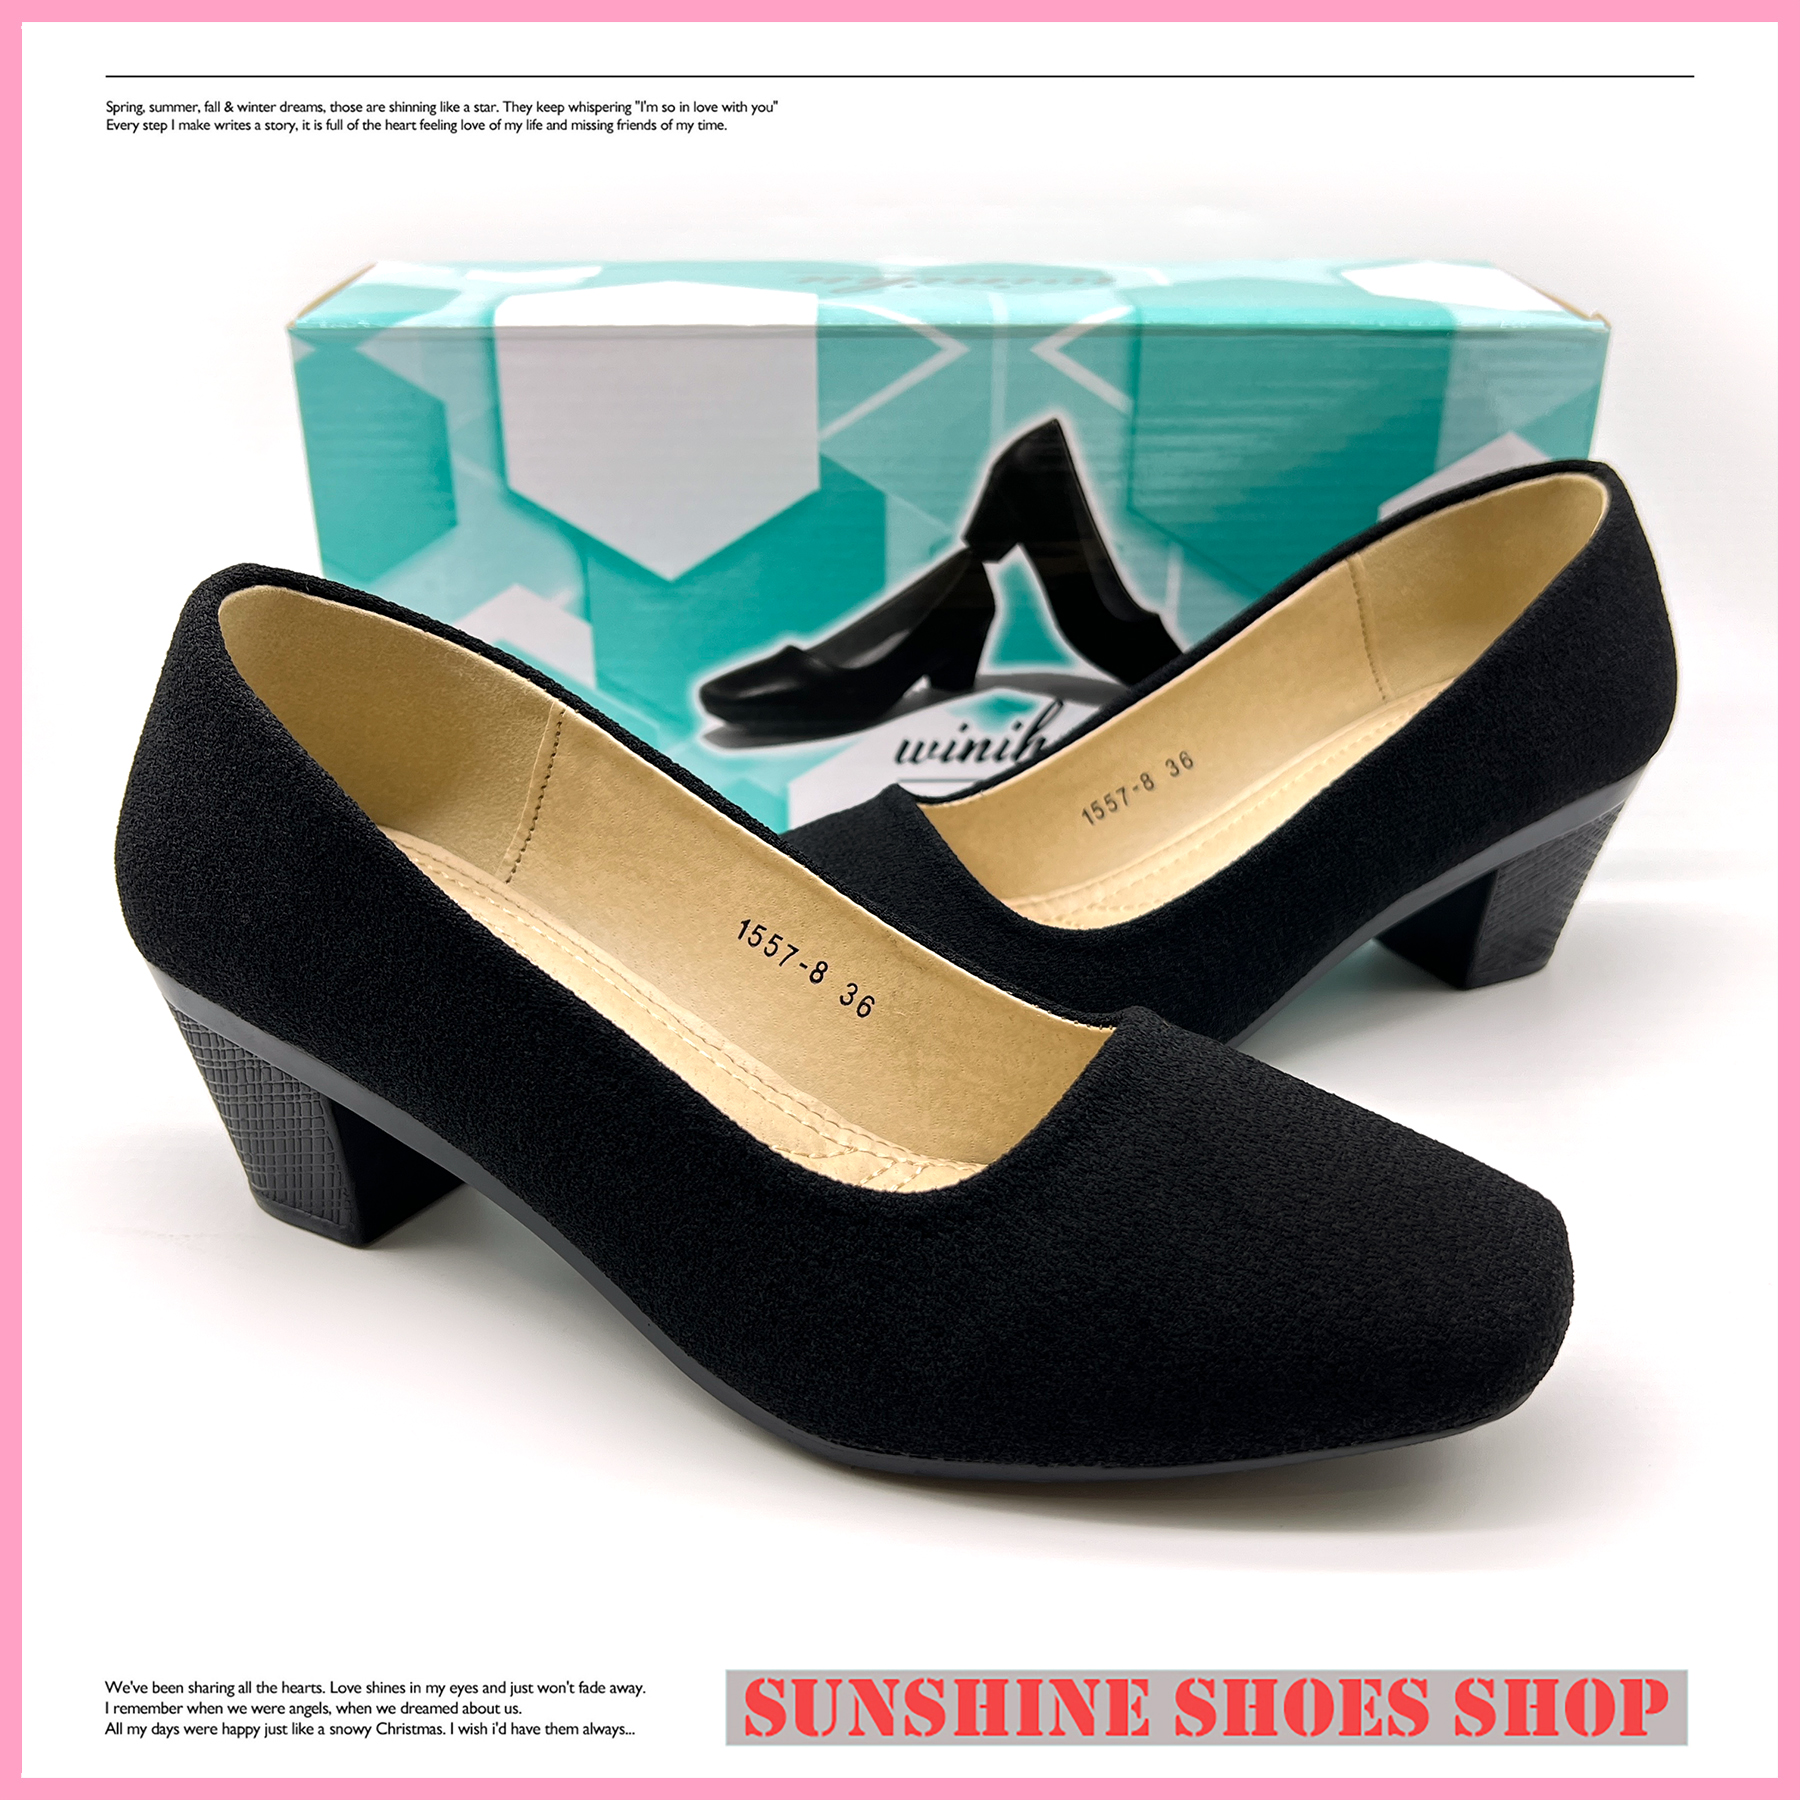 50 Elegant High Heel Wear a Beautiful Feeling - Page 27 of 50 - LoveIn Home  | Heels, Black heels outfit, Black high heels